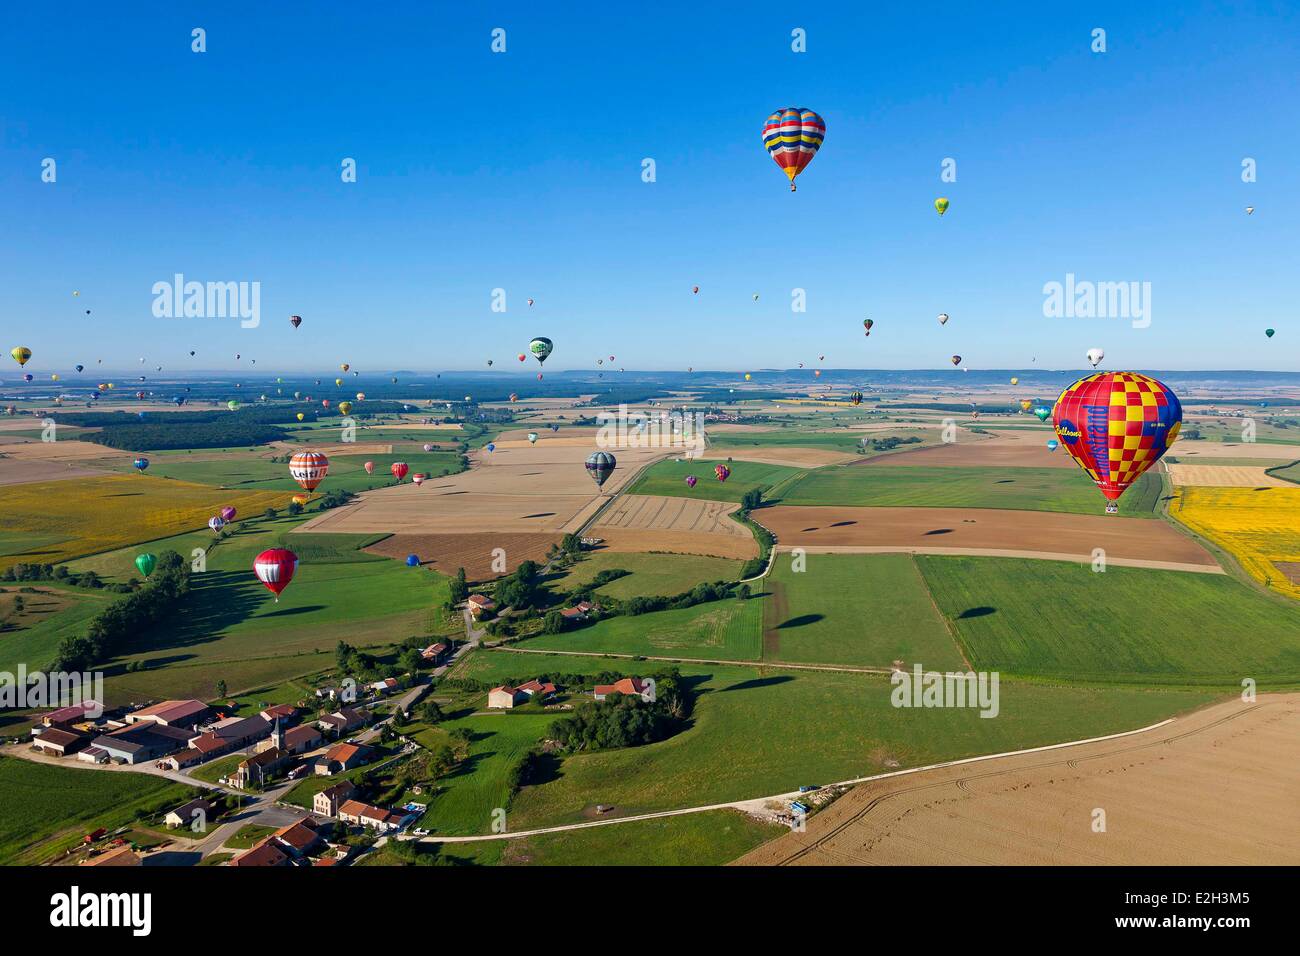 Ballons de célébration 29cm Pastel - MondialAir